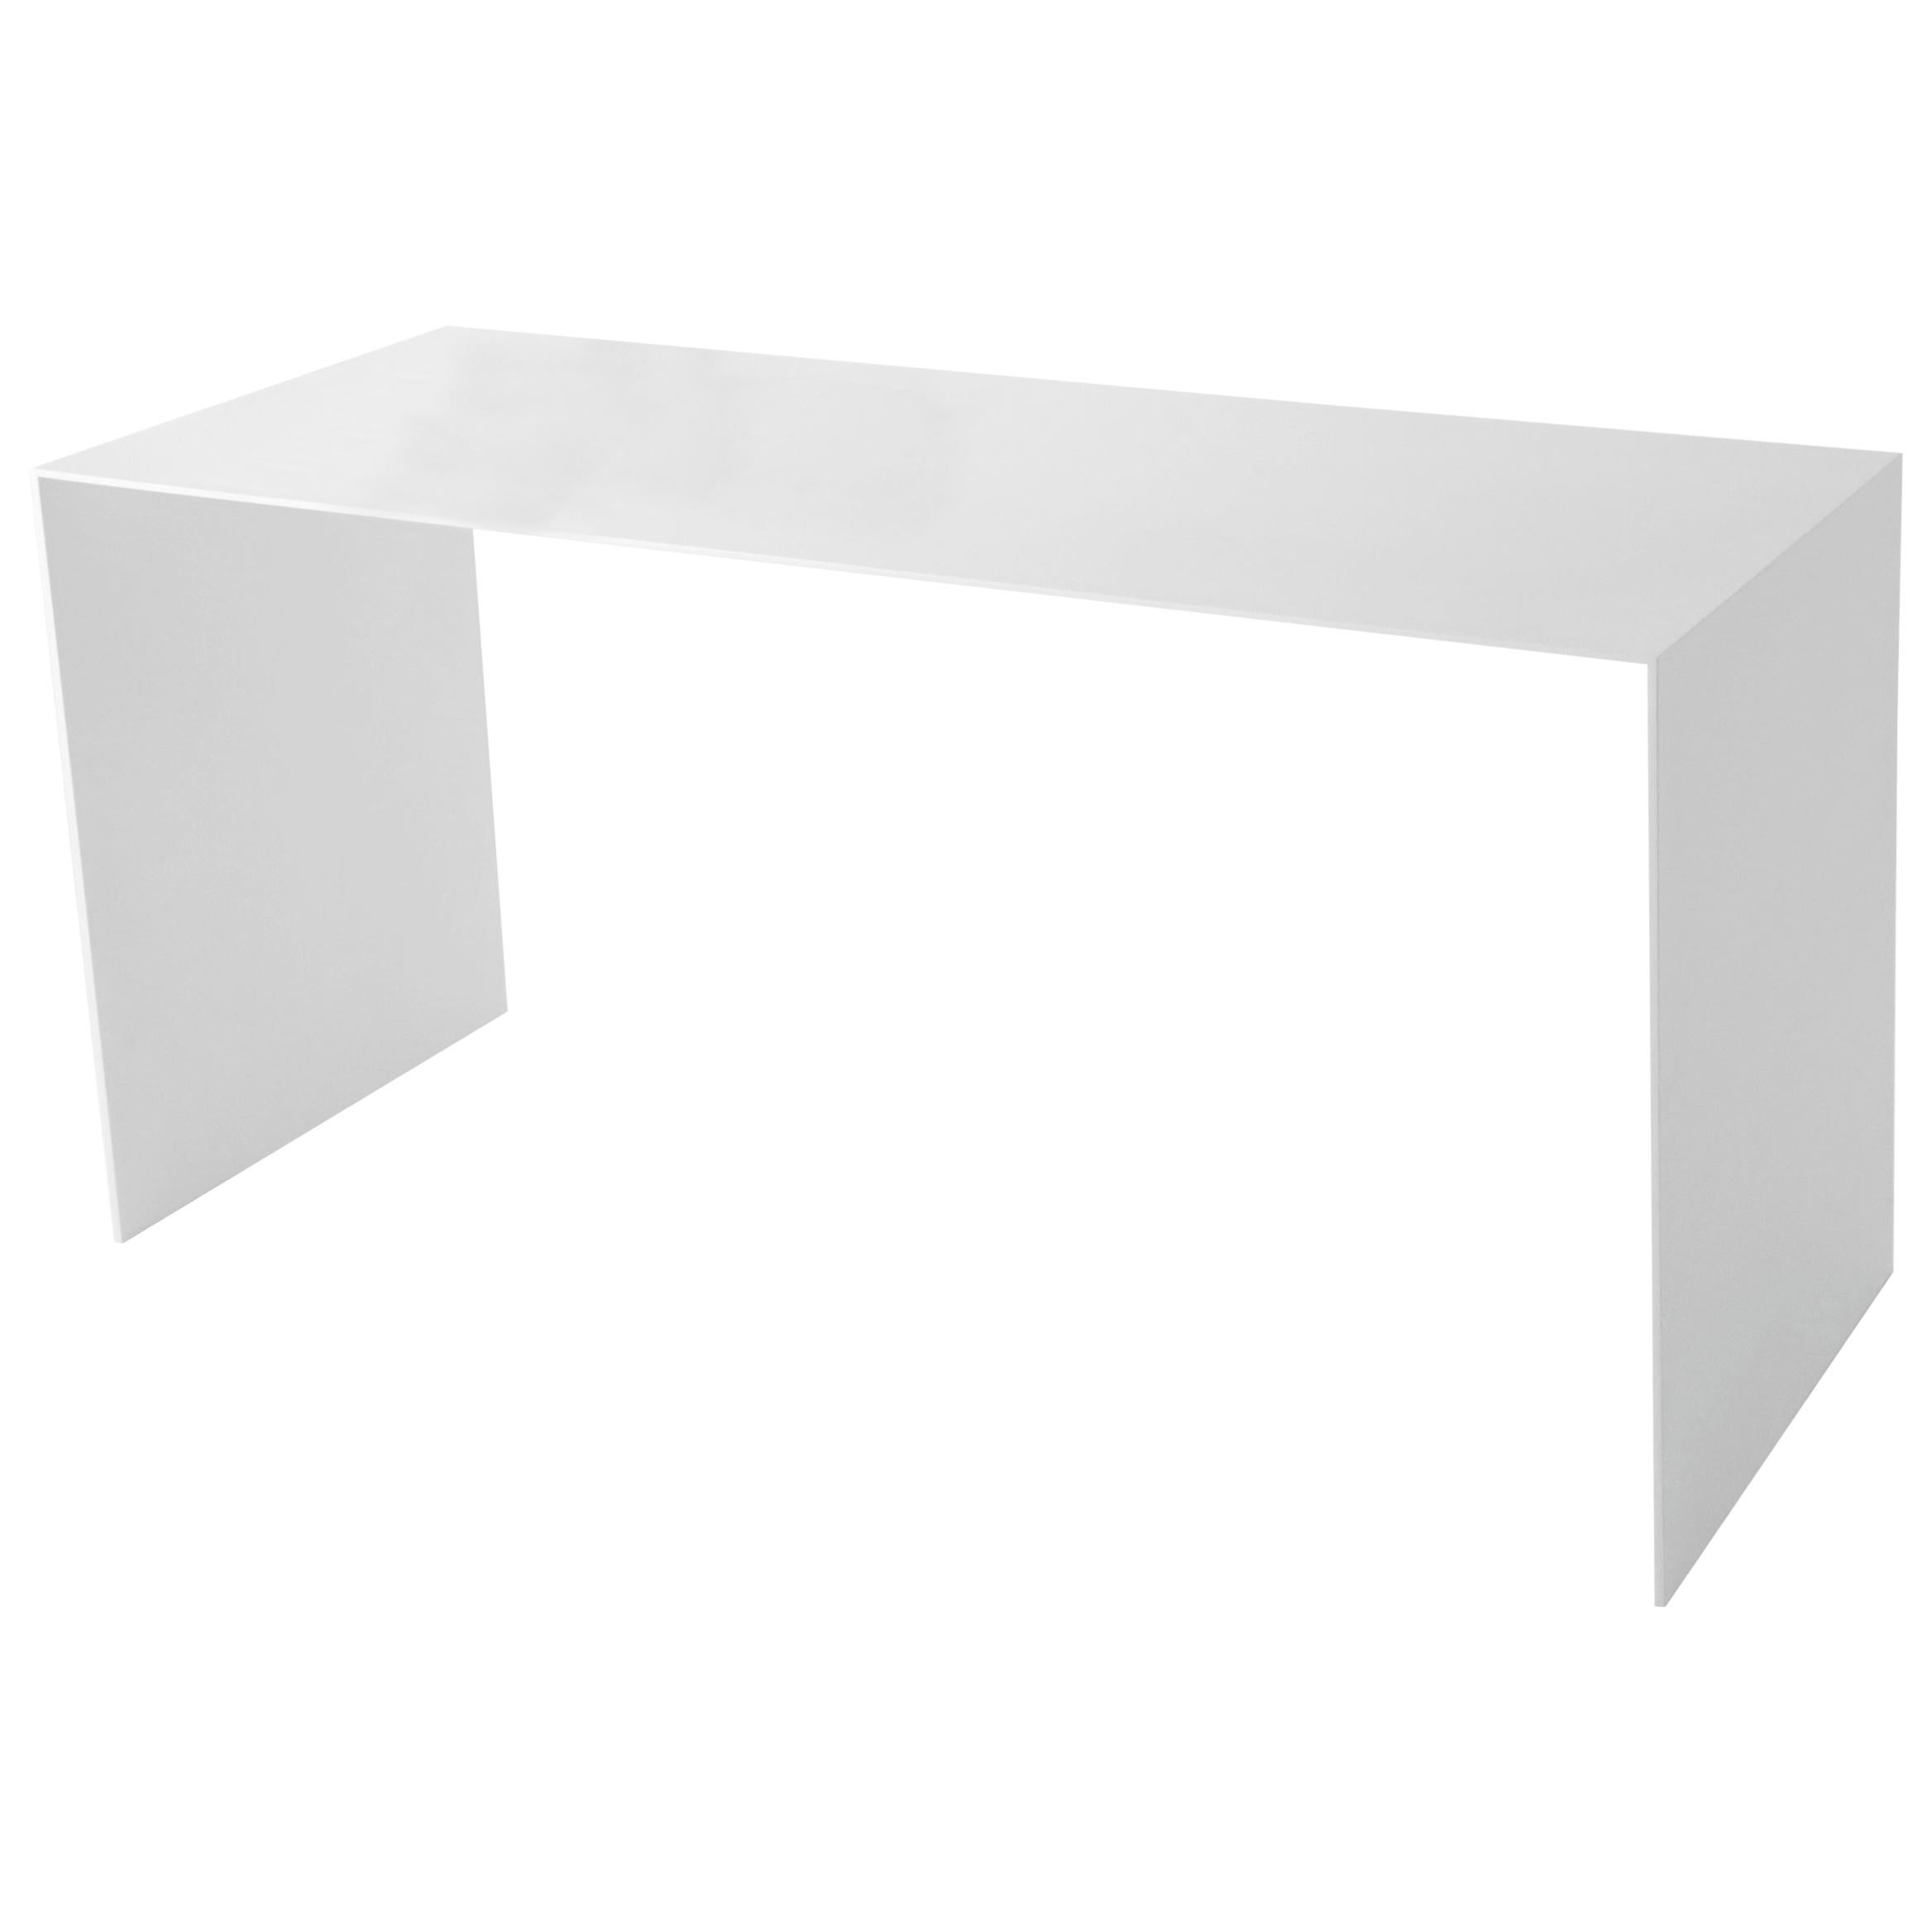 White Aluminum Desk by Lenka Ilic For Sale